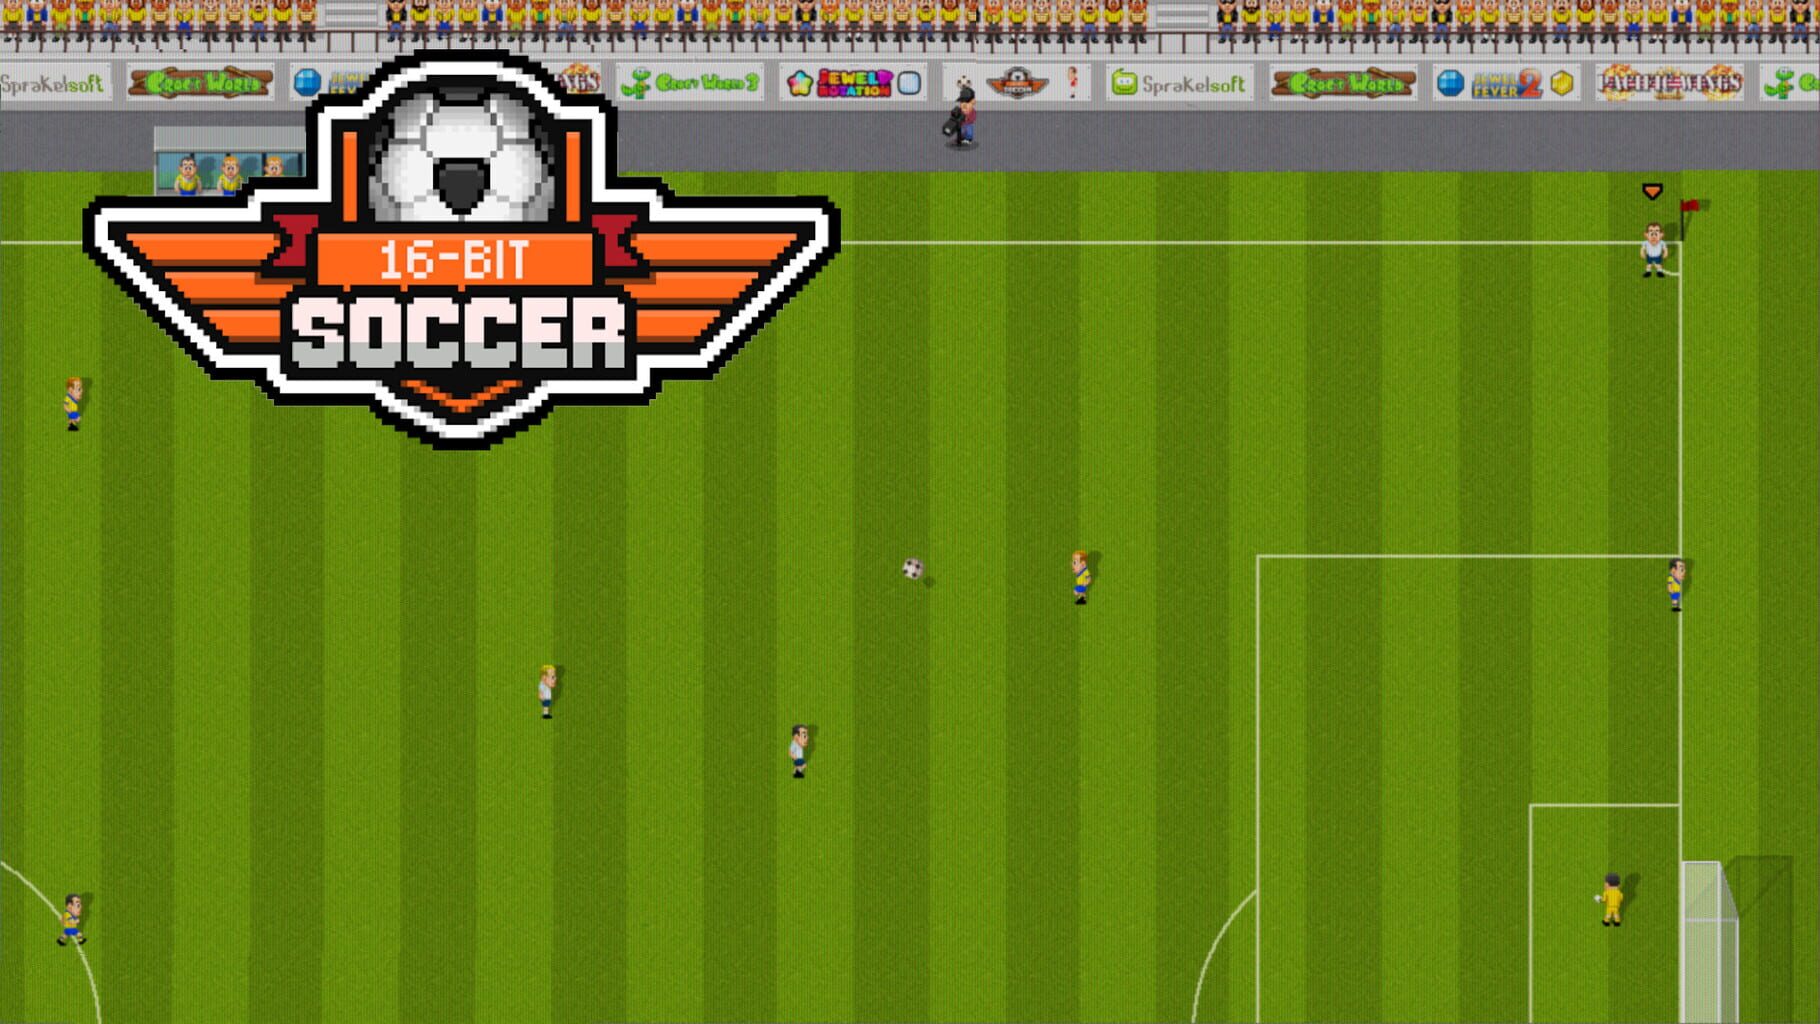 16-Bit Soccer artwork